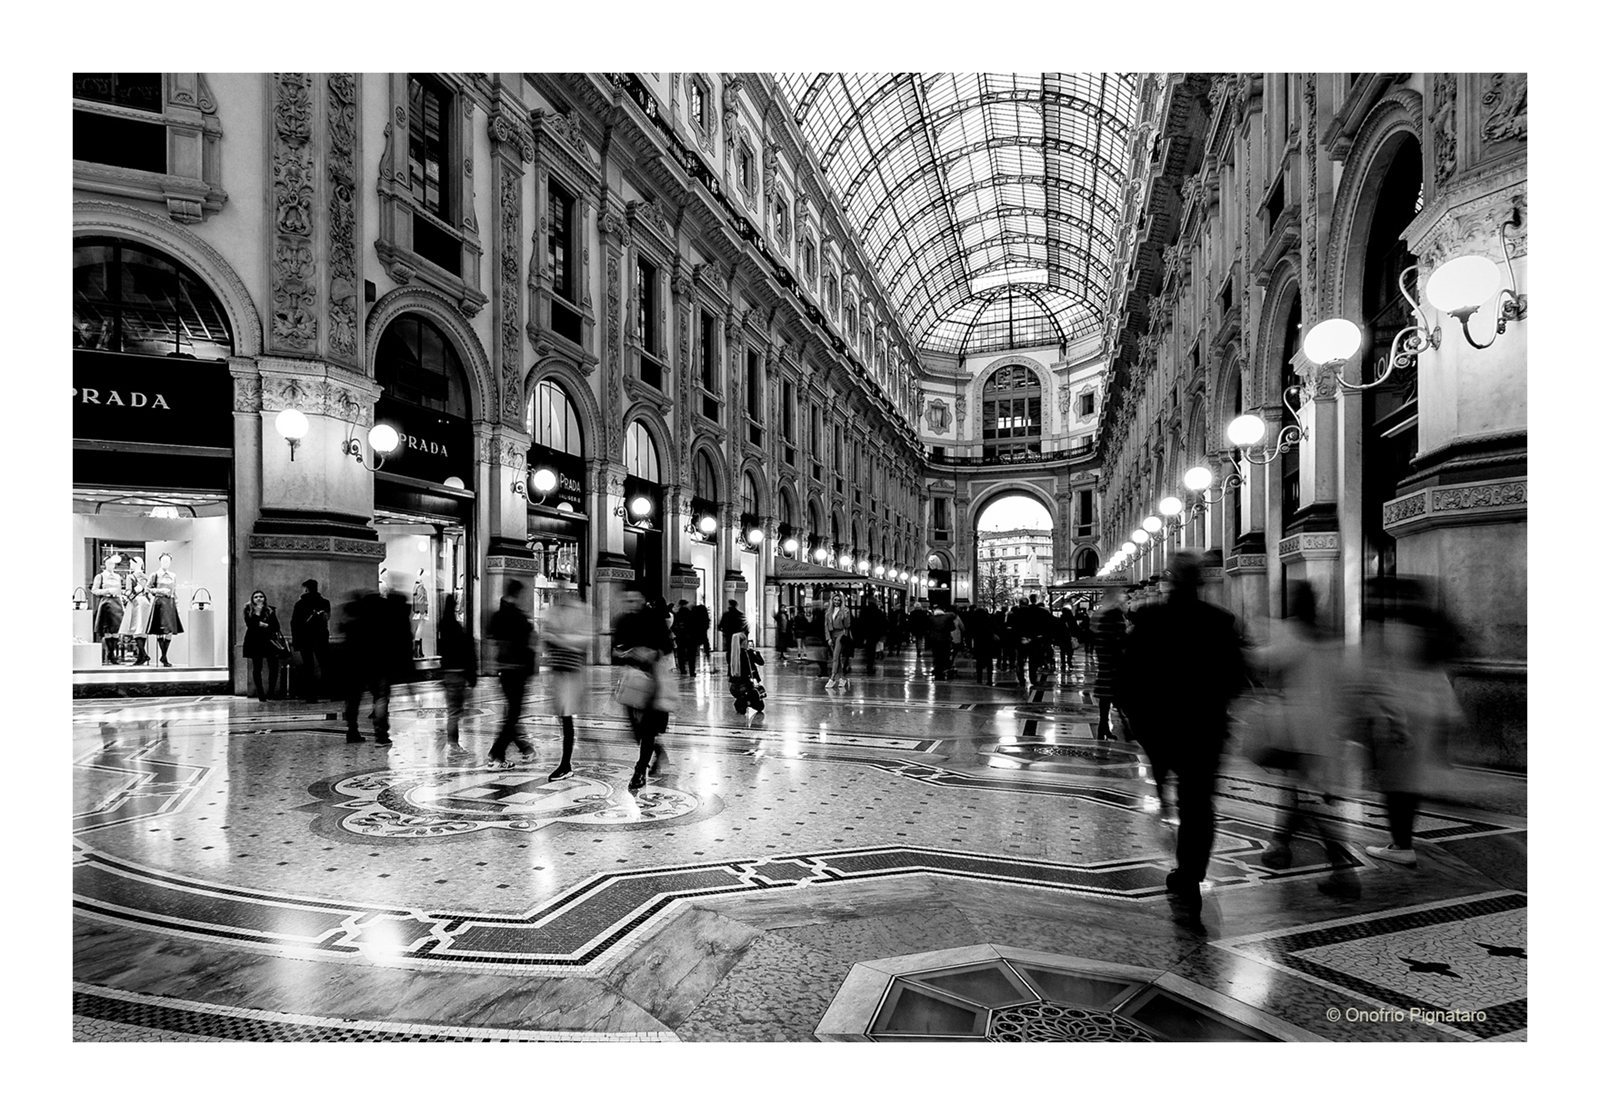 Milano - Galleria Vittorio Emanuele II